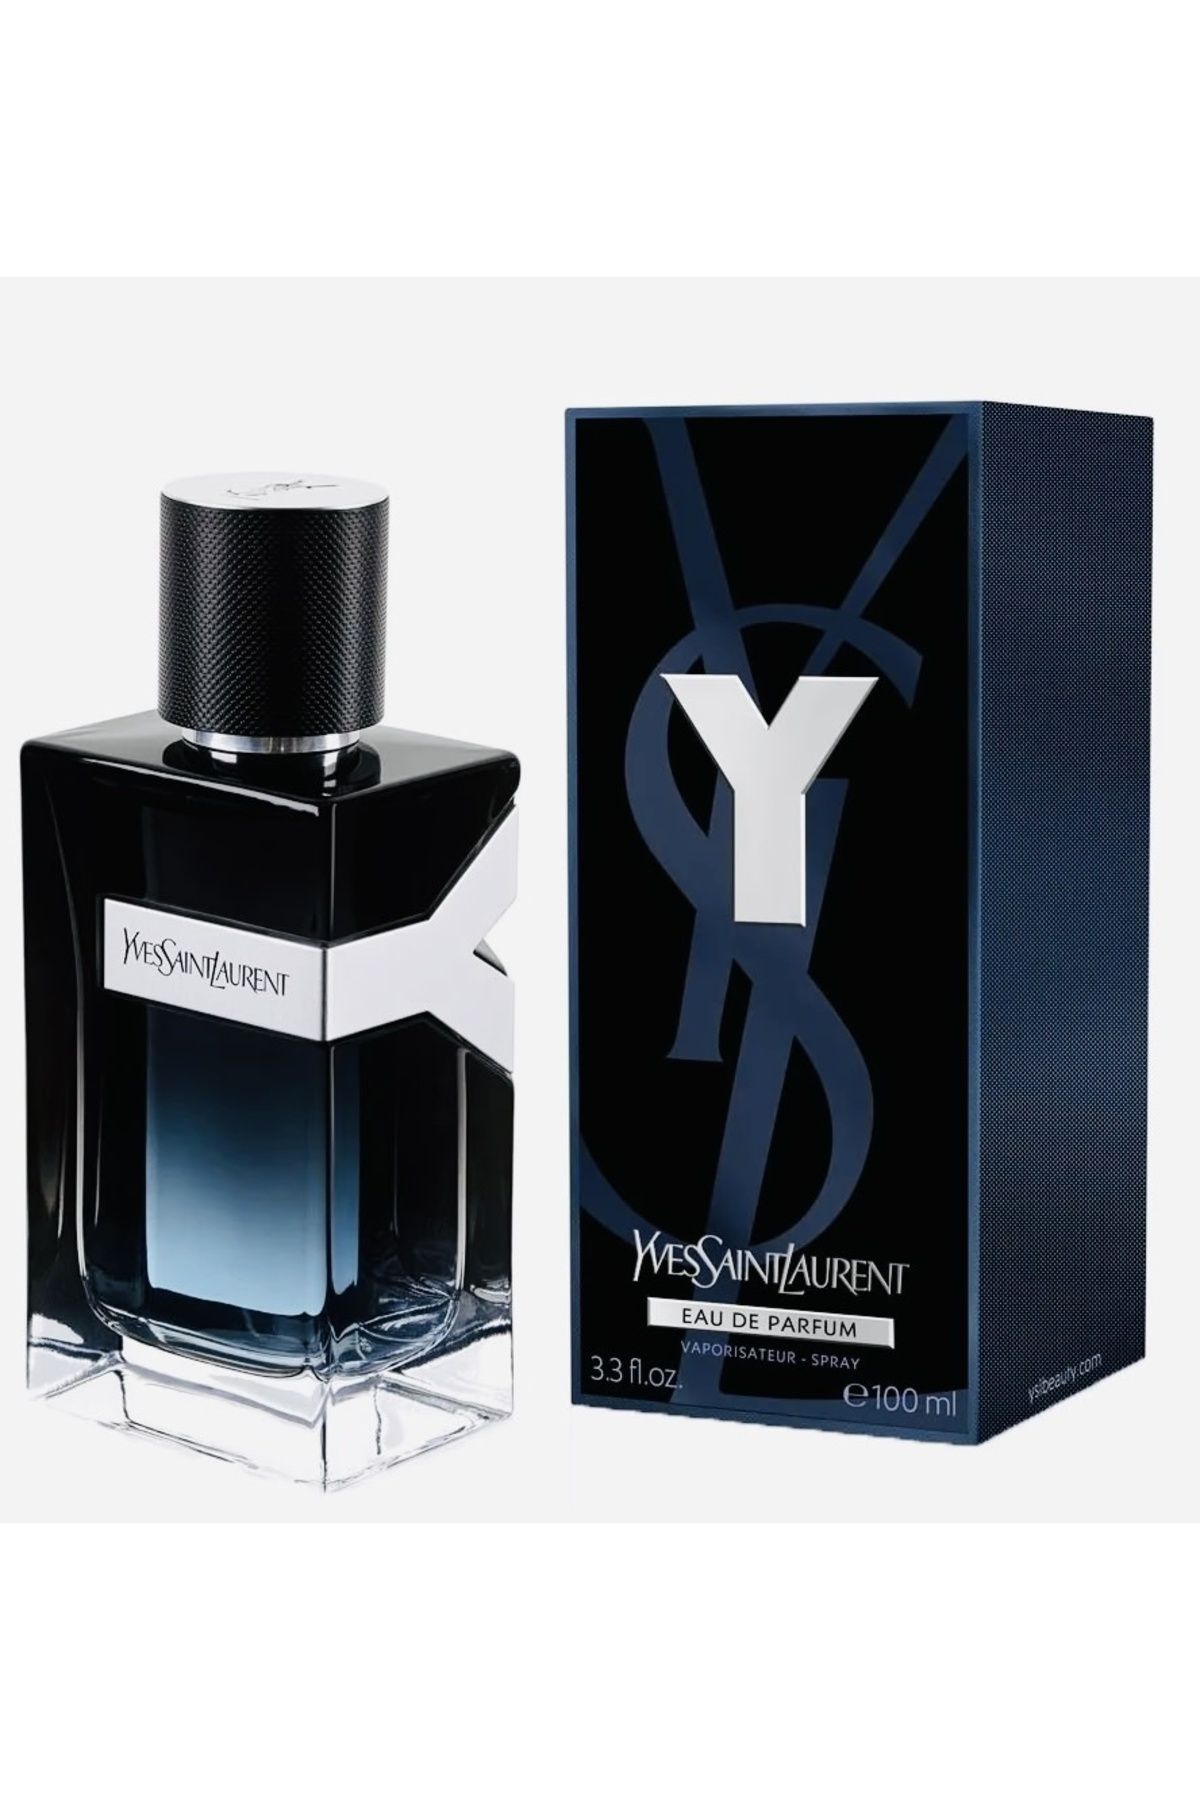 Yves Saint Laurent New Y Men EDP S100 Ml Parfüm